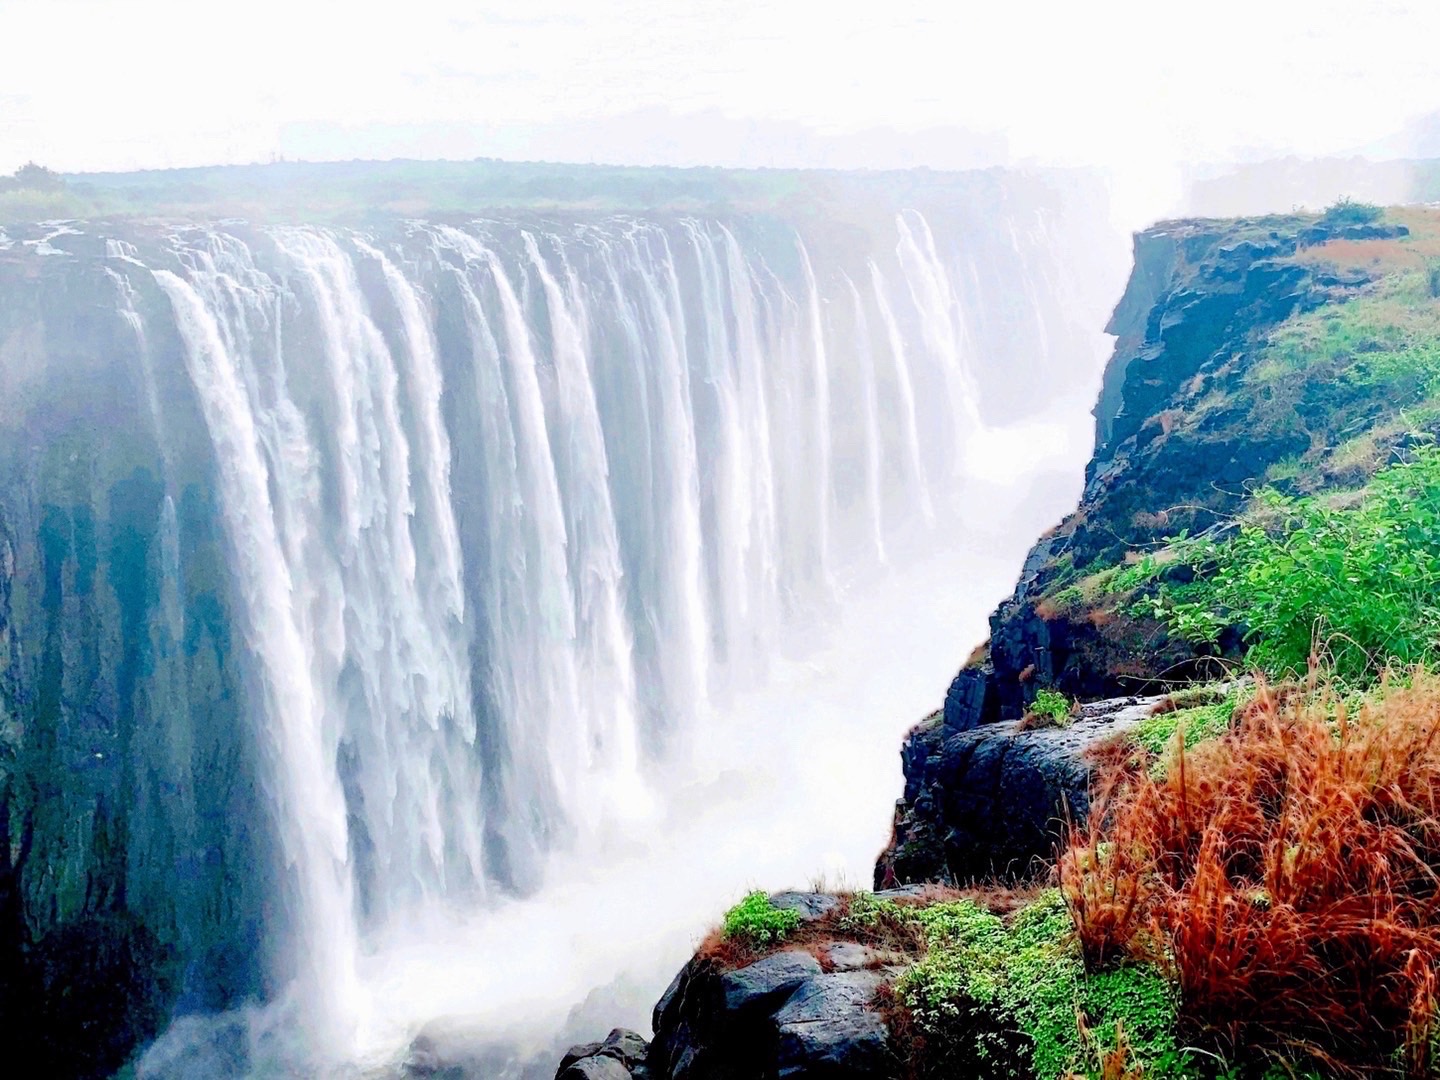 维多利亚瀑布，在津巴布韦和赞比亚交界的地方，是世界上三大瀑布之一。是比尼亚加拉、伊瓜苏、更为宽阔的瀑